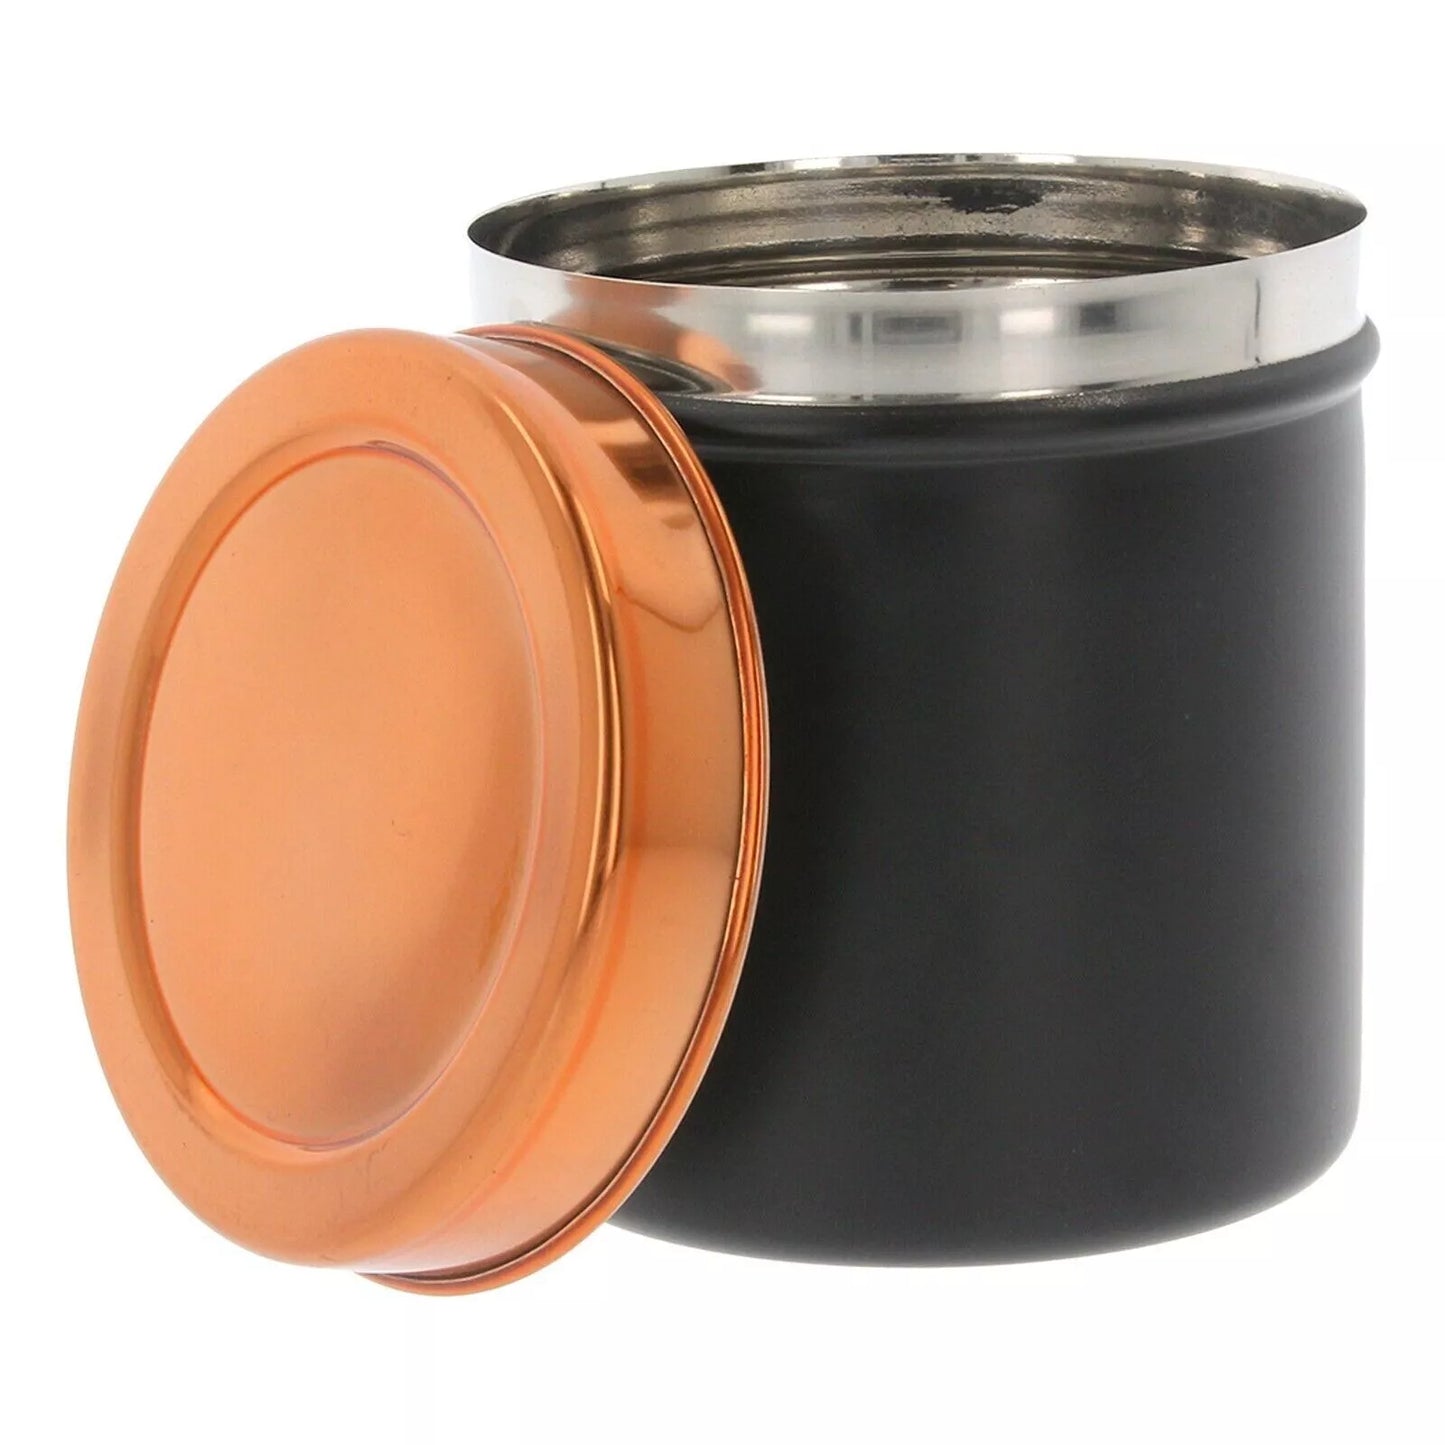 Set of 3 Tea Coffee Sugar Canisters MAT BLACK,Kitchen Storage Jar Pot Metal